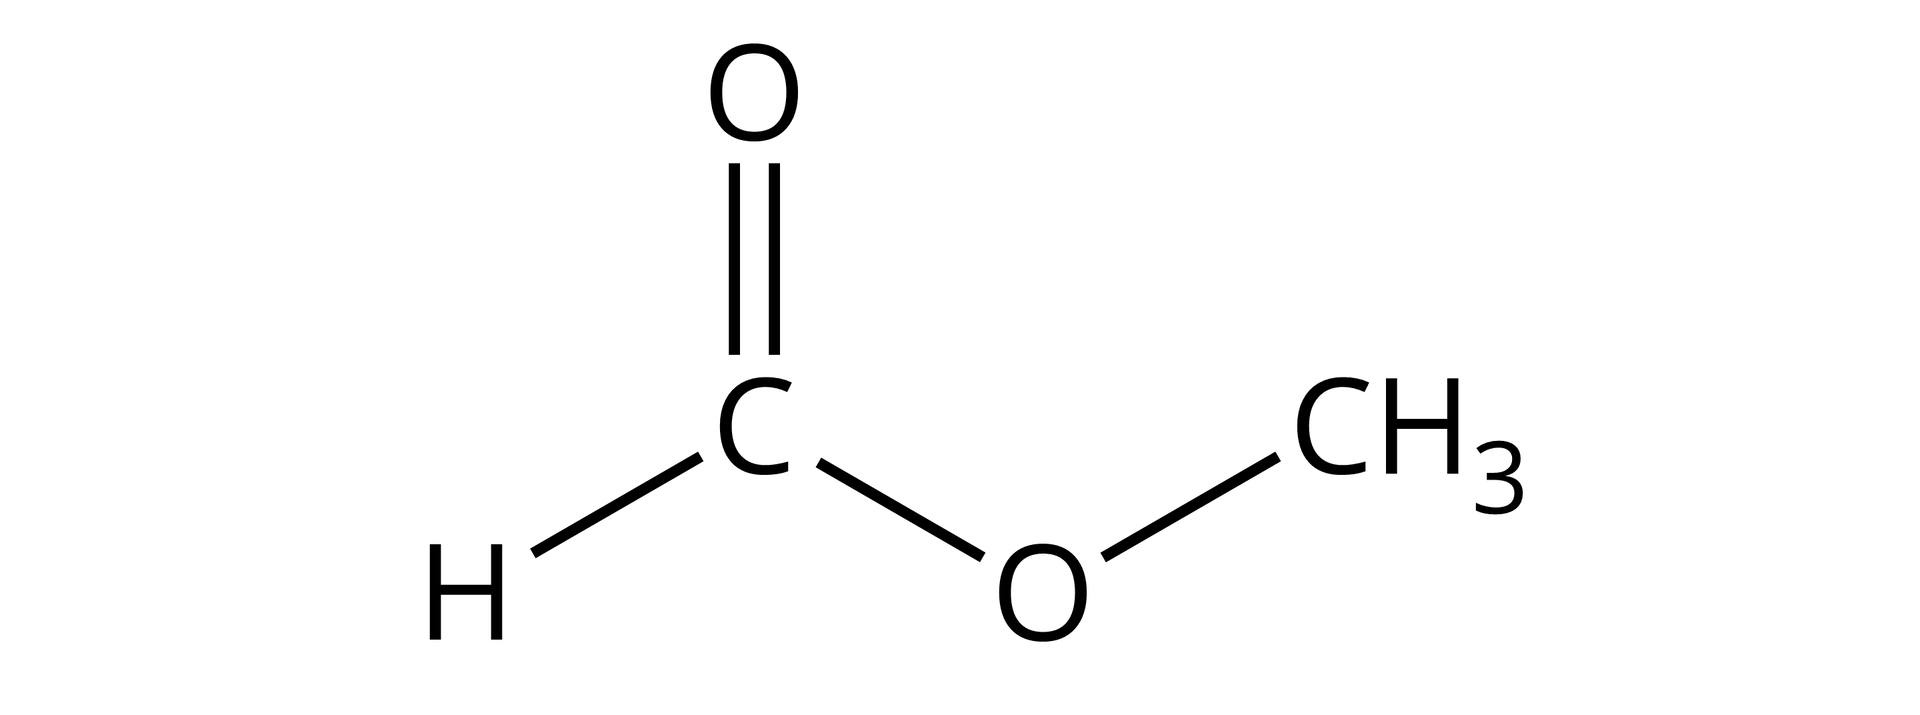 Ilustracja przedstawiająca wzór półstrukturalny mrówczanu metylu zbudowanego z atomu wodoru związanego z atomem węgla, który to łączy się za pomocą wiązania podwójnego z atomem tlenu oraz za pomocą wiązania pojedynczego z drugim atomem tlenu podstawionym grupą metylową CH3.